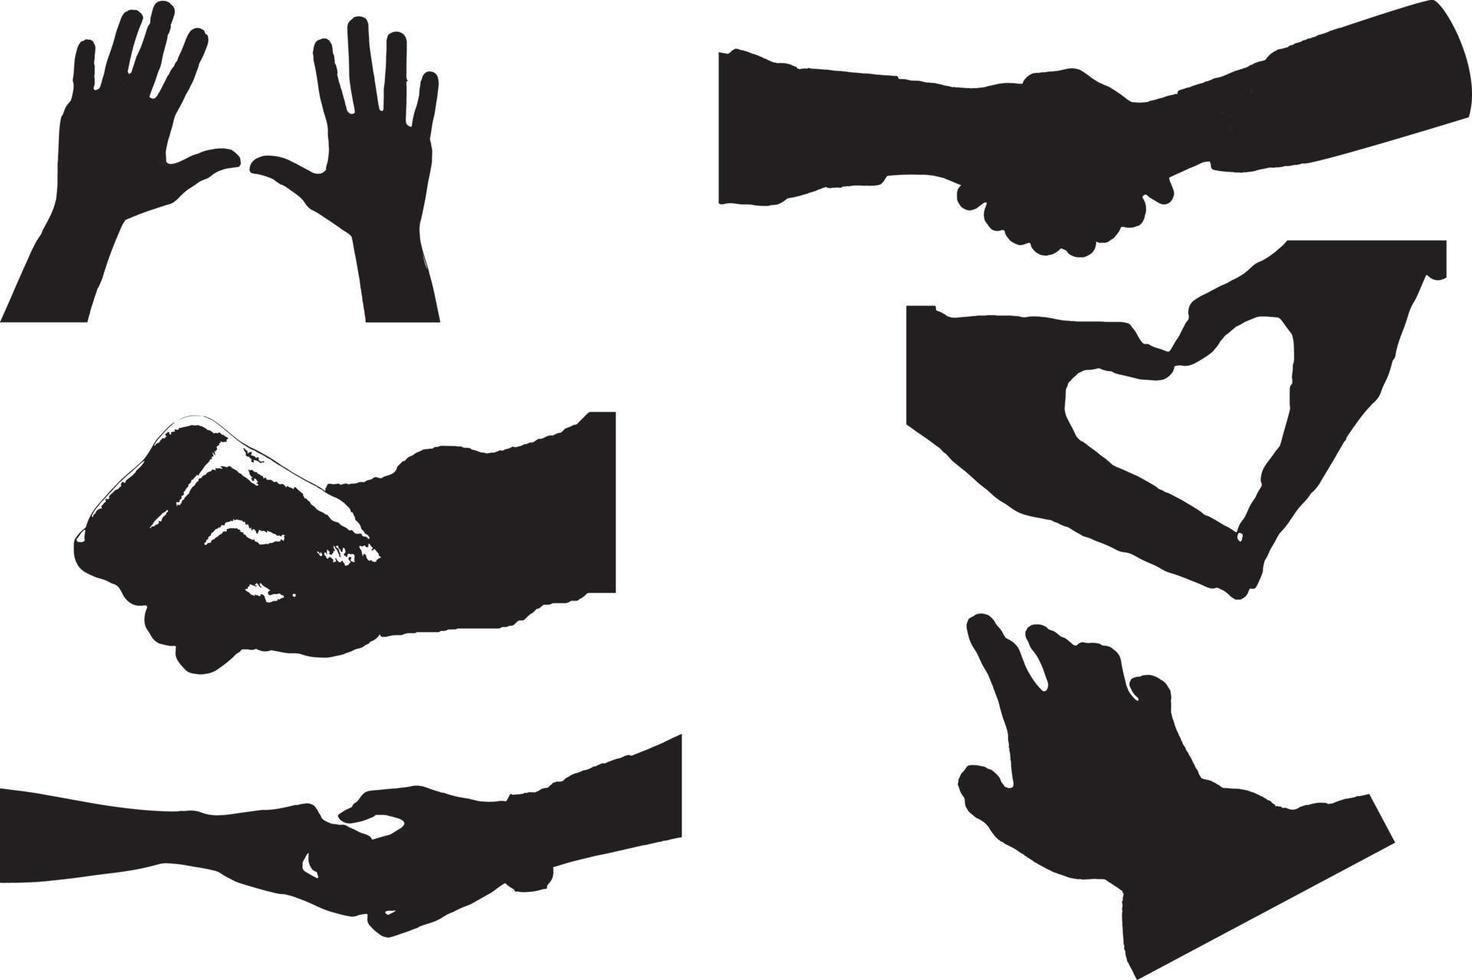 ensemble de diverses mains de femme silhouette noire. collection vectorielle de mains féminines de différents gestes. style minimaliste tendance pour les logos, les imprimés, les dessins, les illustrations. vecteur